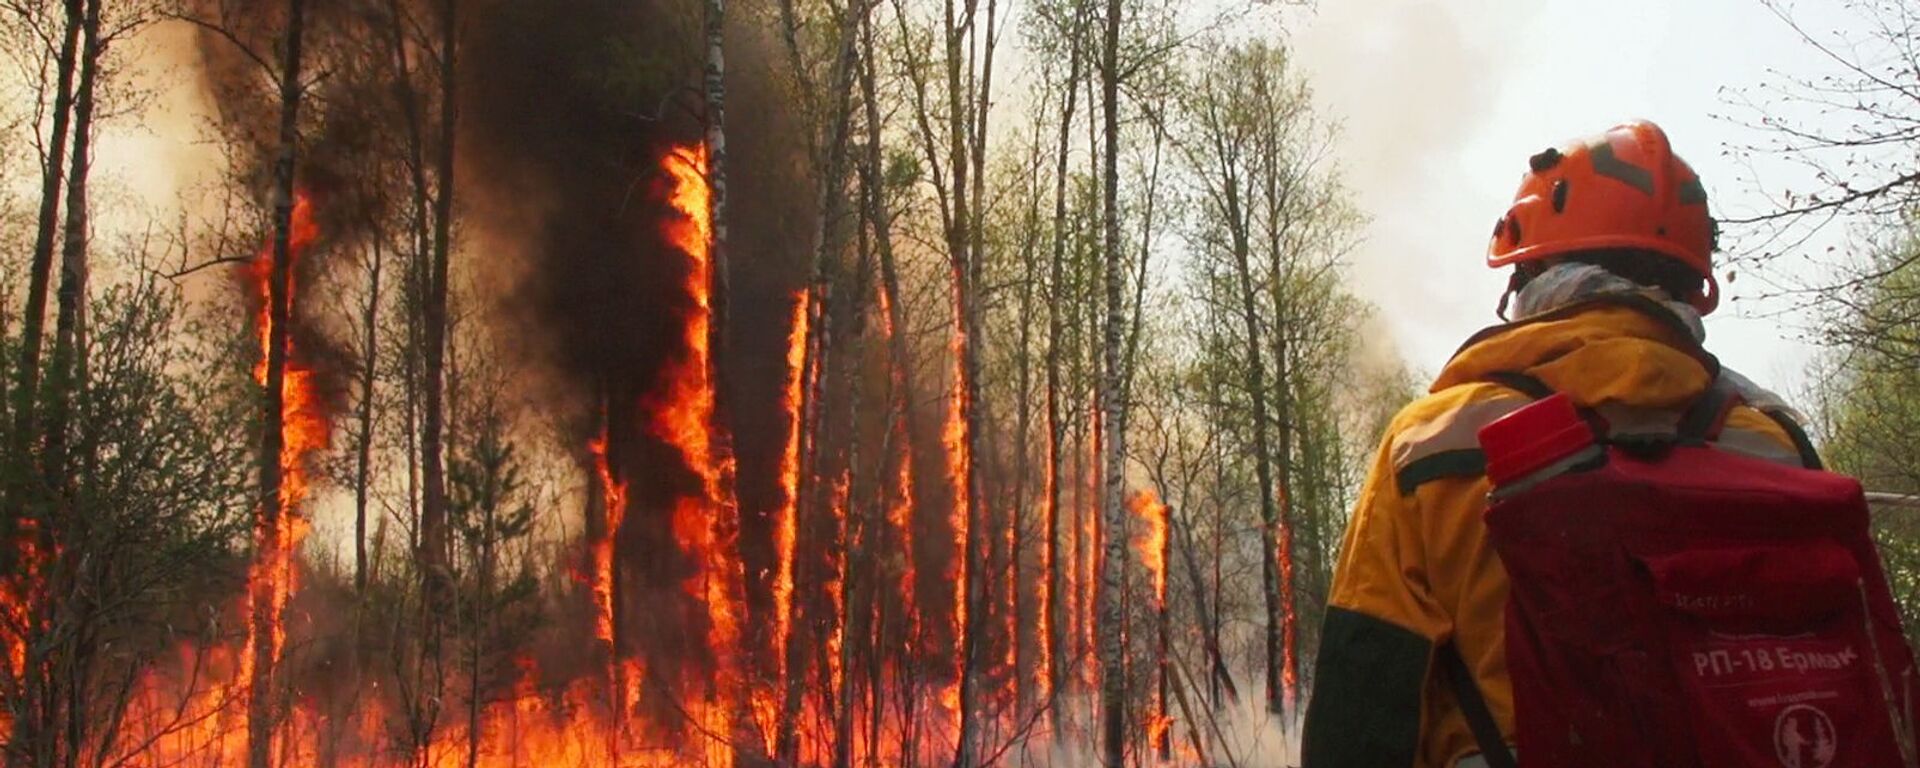 Yakutistan’da acil durum ilan edildi: Orman yangınları yerleşim yerlerine sıçradı - Sputnik Türkiye, 1920, 09.08.2021